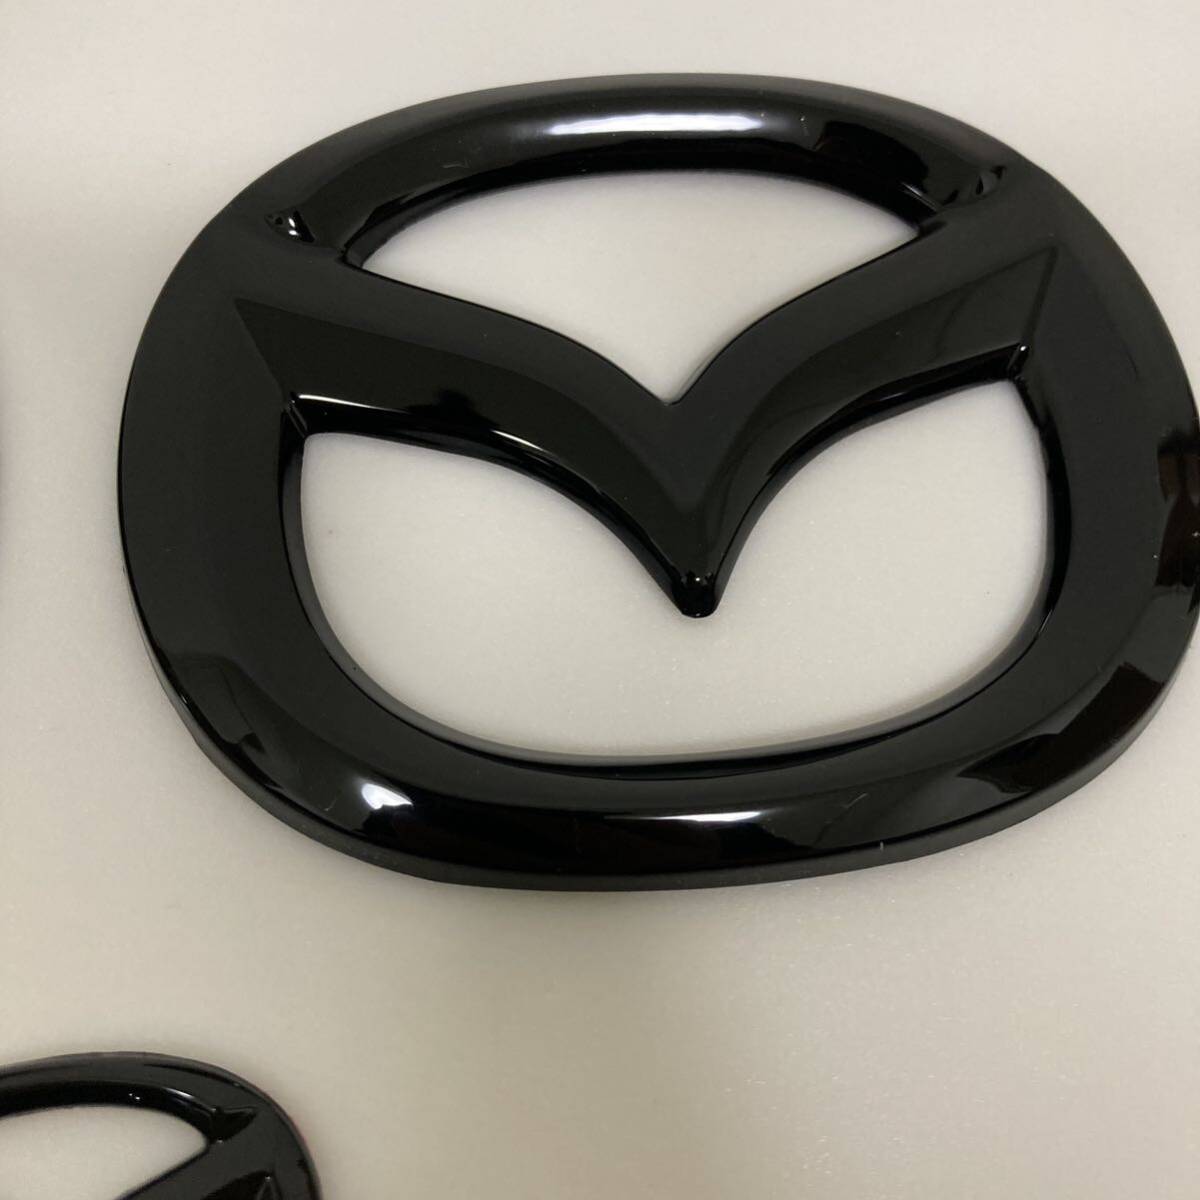  Mazda MAZDA3 emblem cover garnish front and back set black 